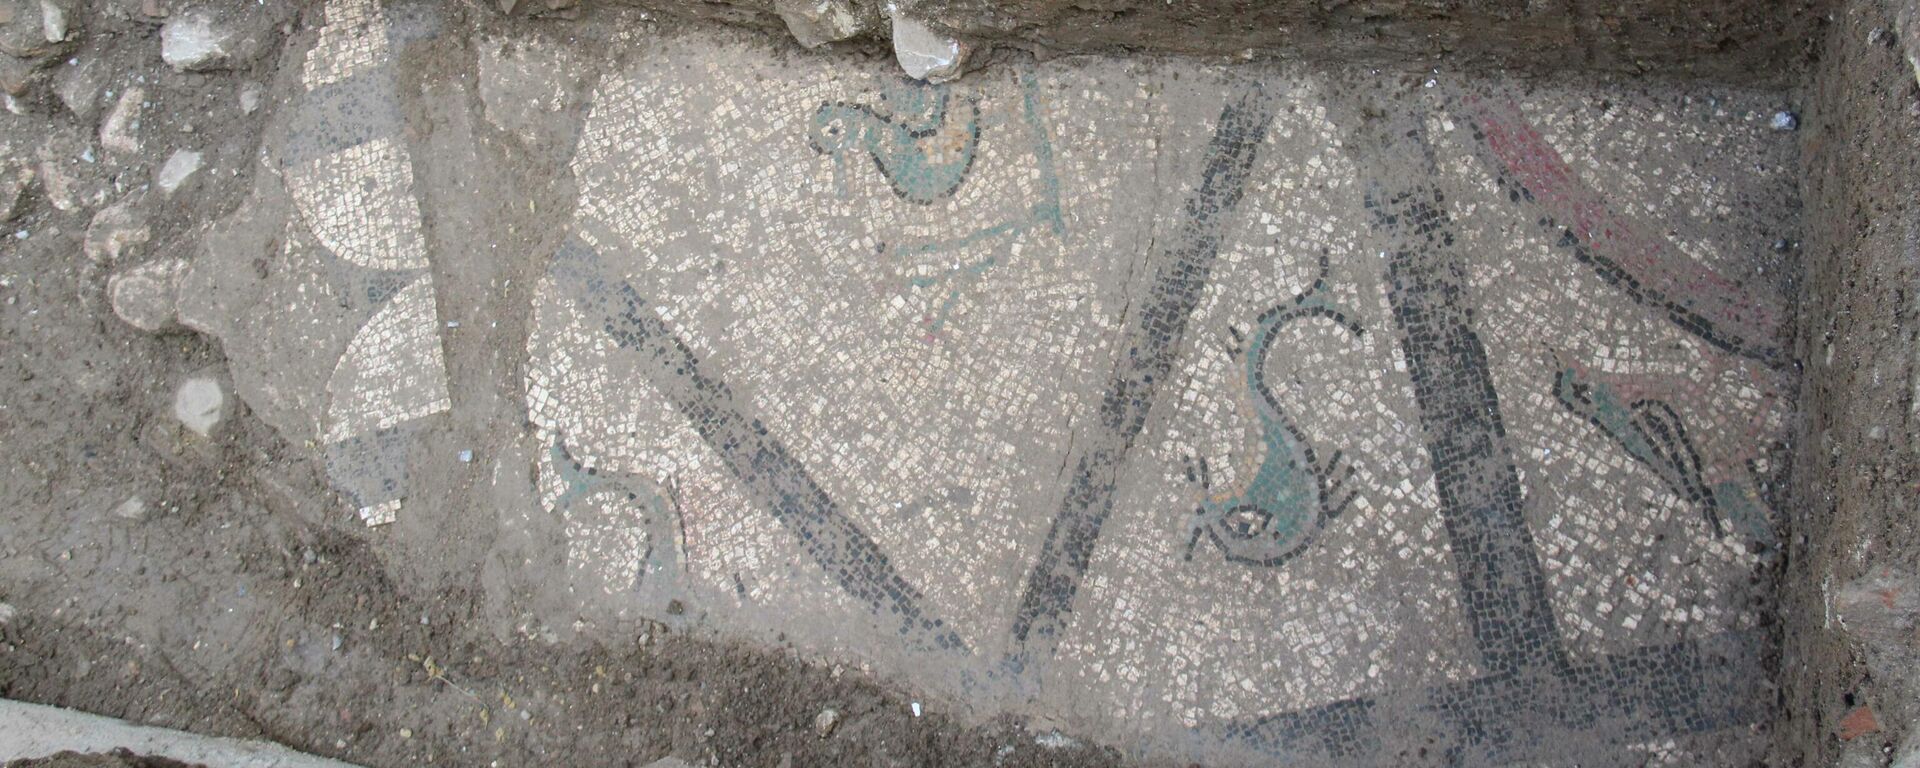 Mosaico romano hallado en 2021 en Cártama - Sputnik Mundo, 1920, 17.02.2021